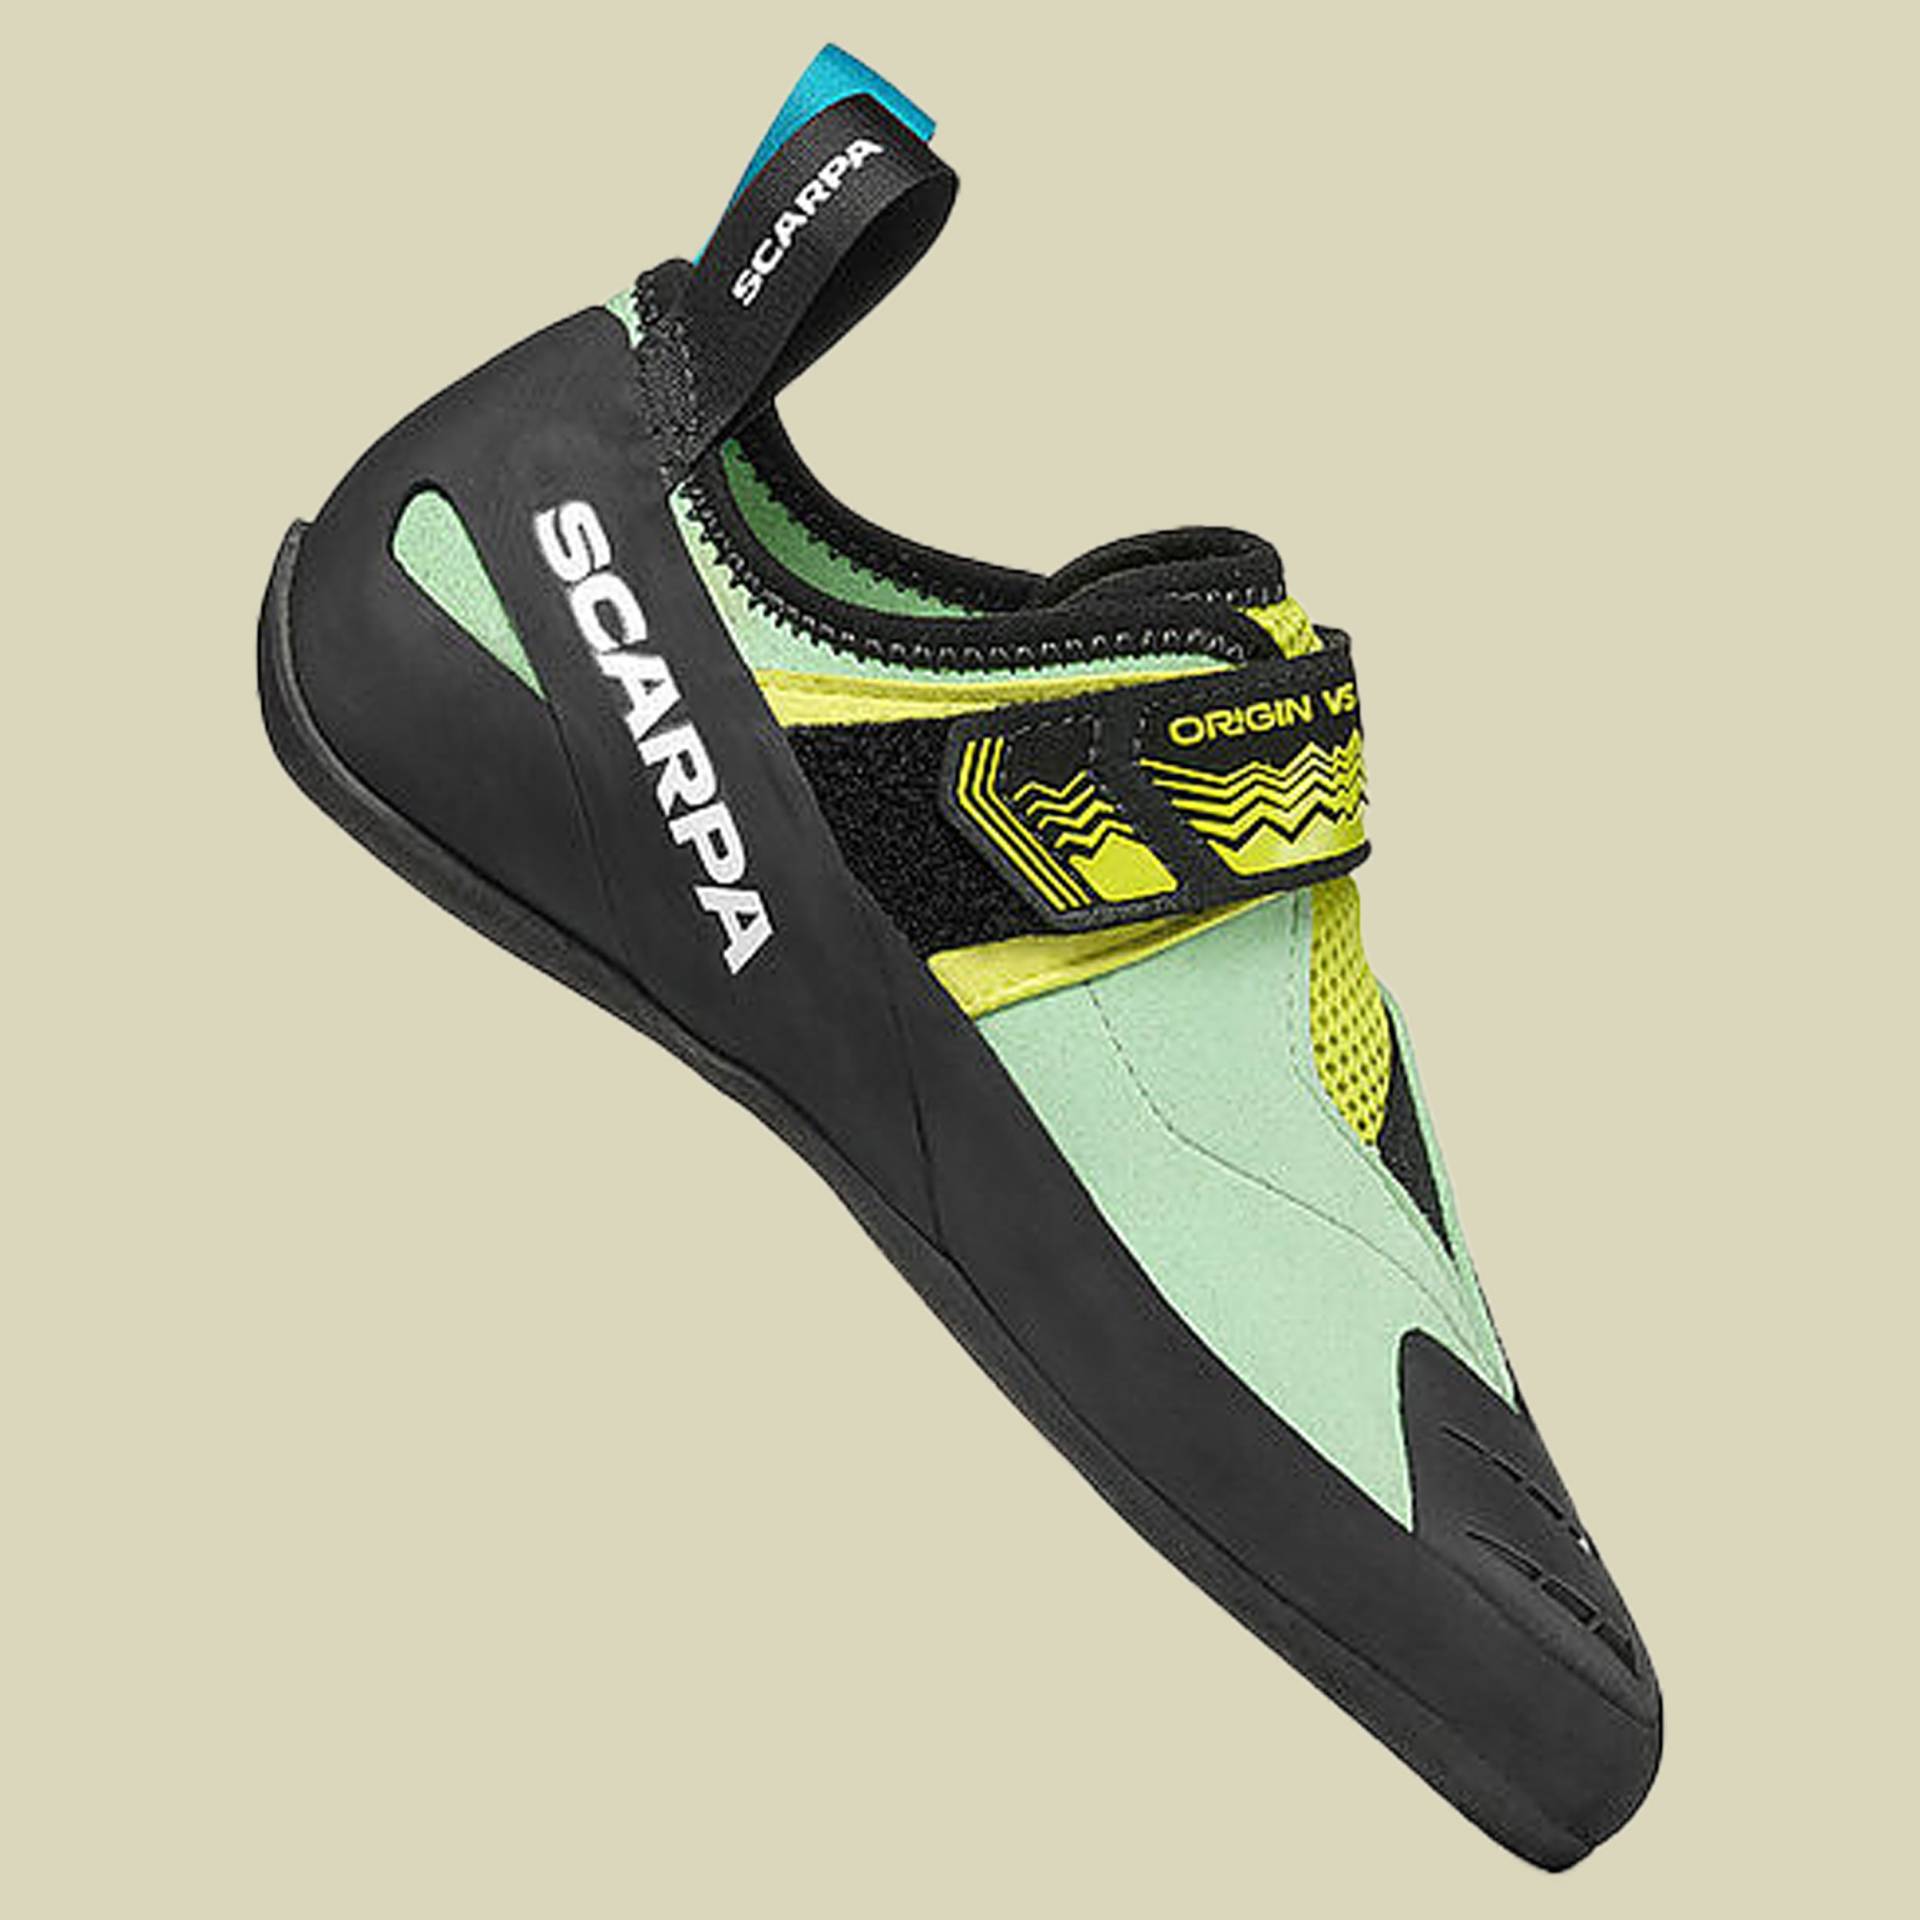 Origin VS Women Größe 39 Farbe pastel green/lime von Scarpa Schuhe